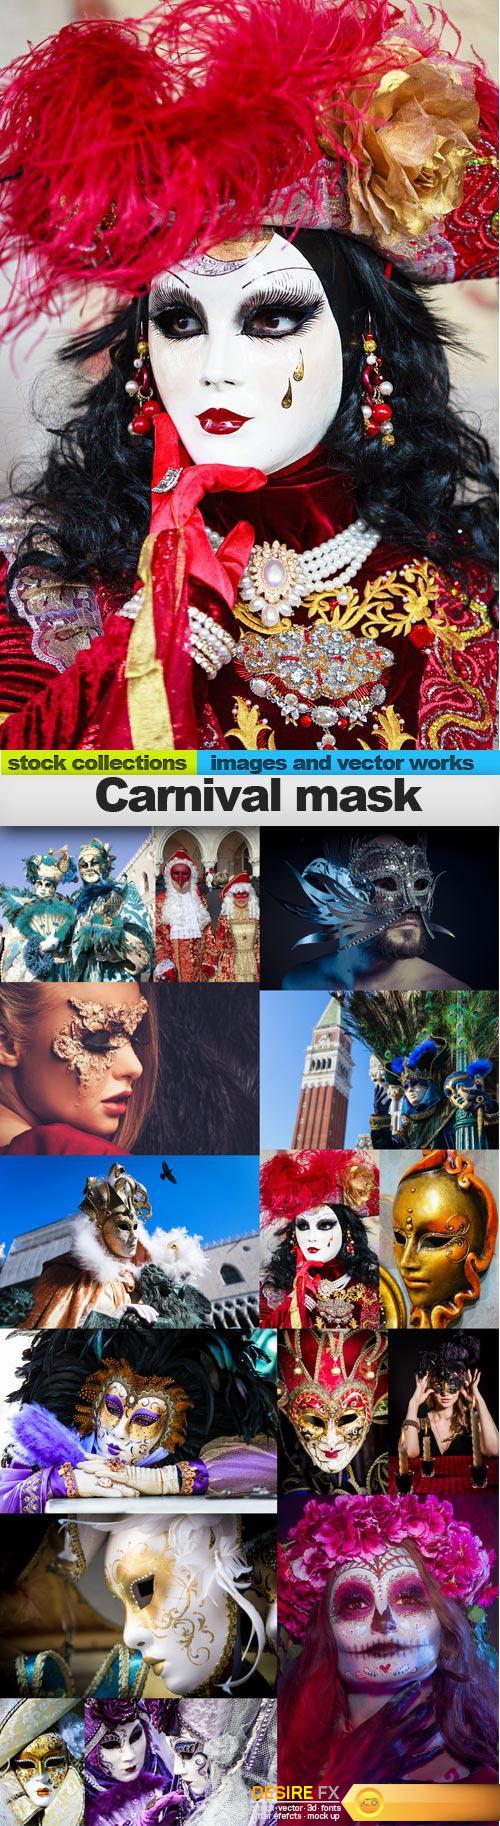 Carnival mask, 15 x UHQ JPEG